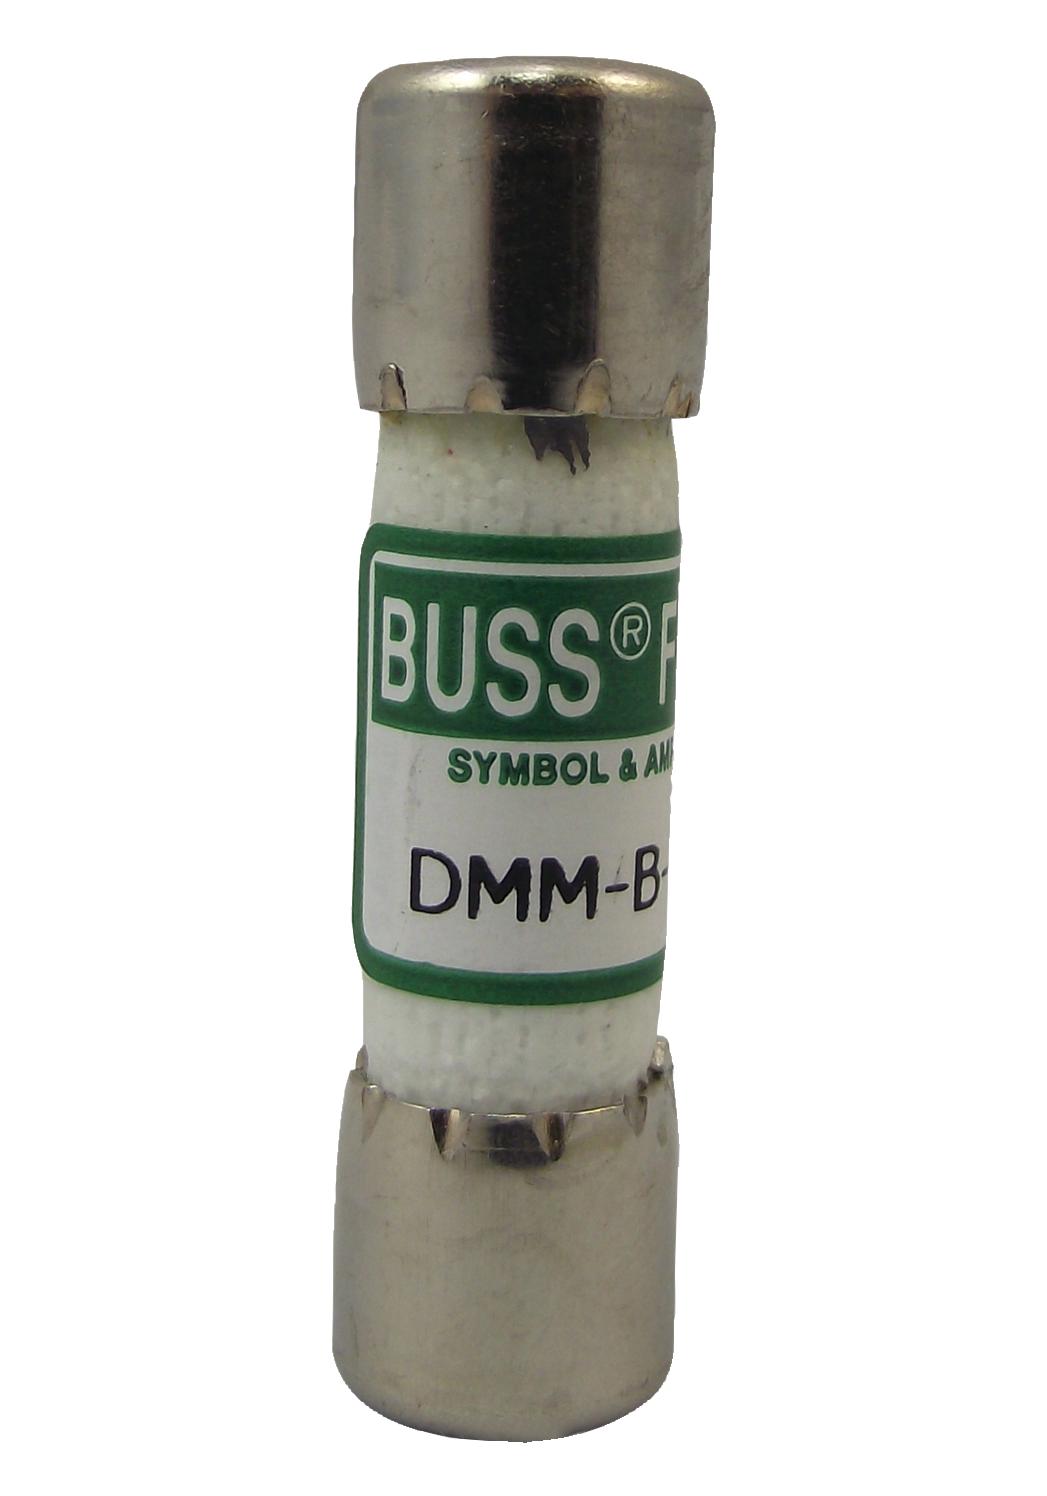 DMM-B-11A FUSE, TEST EQUIPMENT, 11A, 38X10MM EATON BUSSMANN